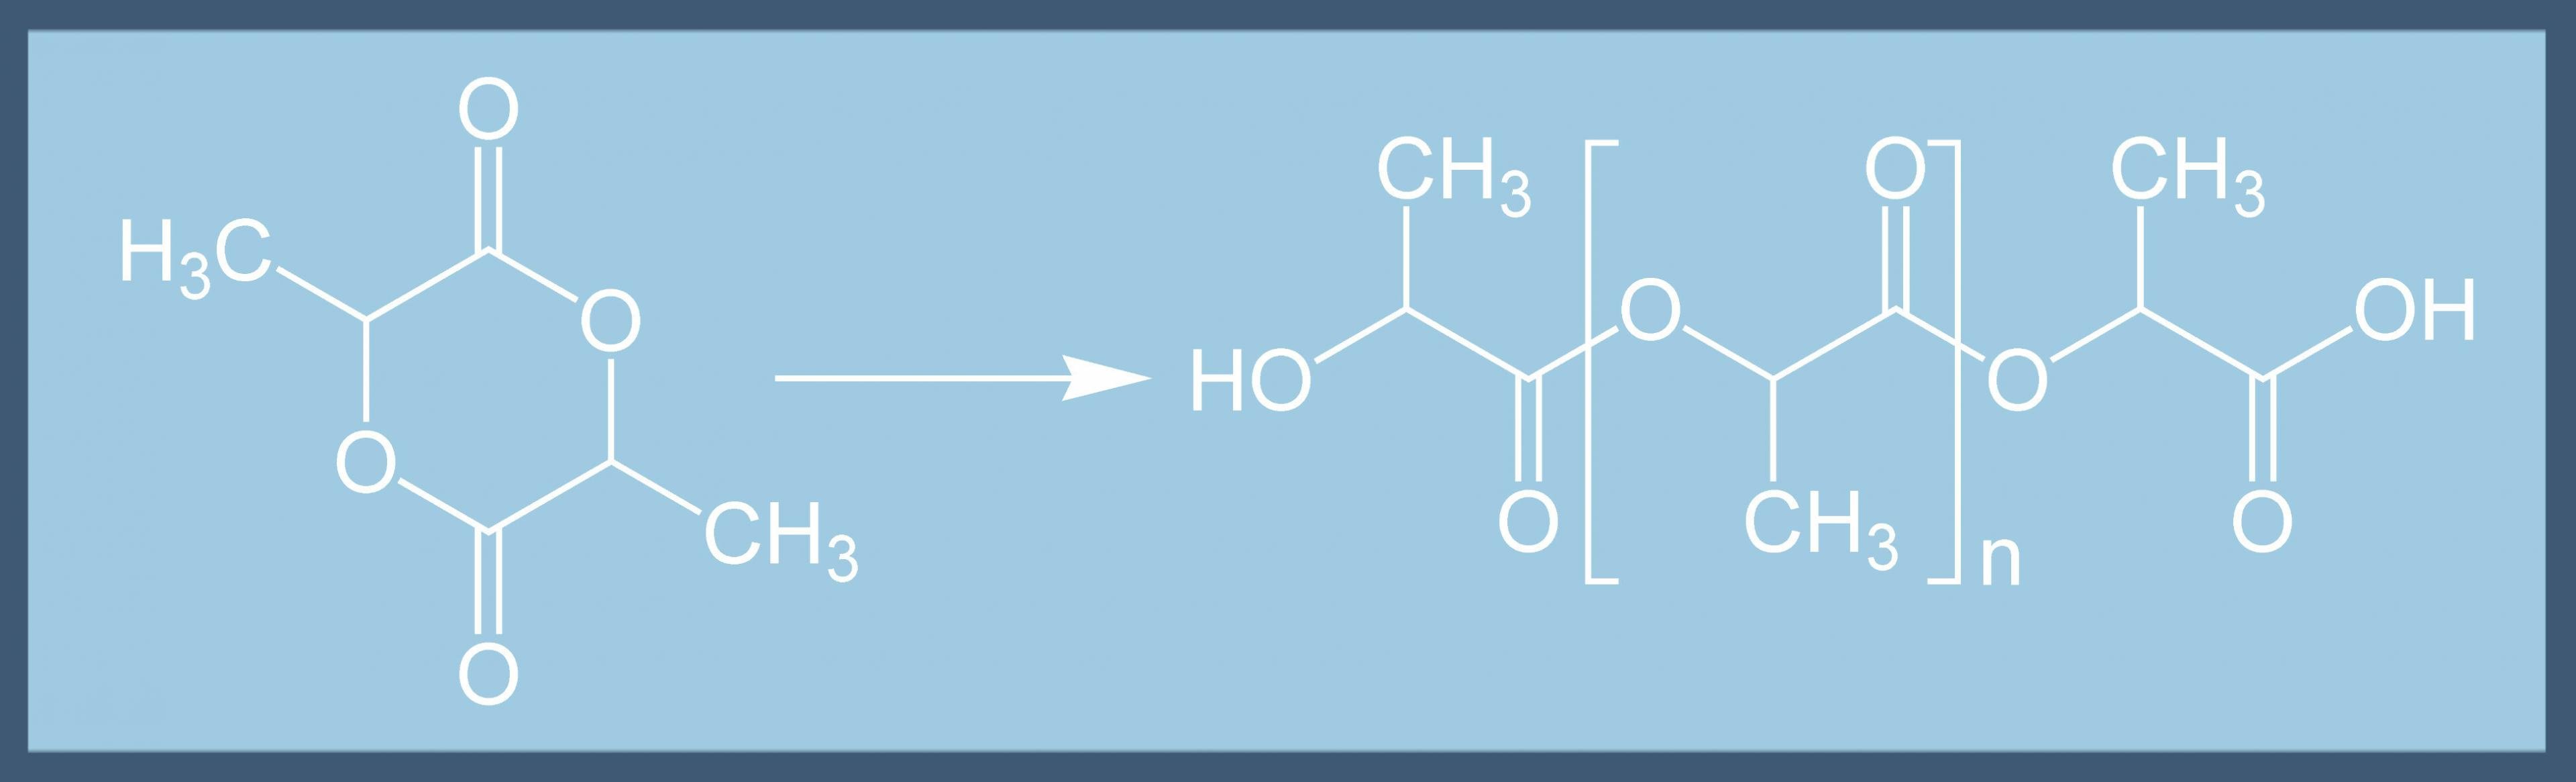 Chemische Strukturformeln von Lactid und Polymilchsäure-